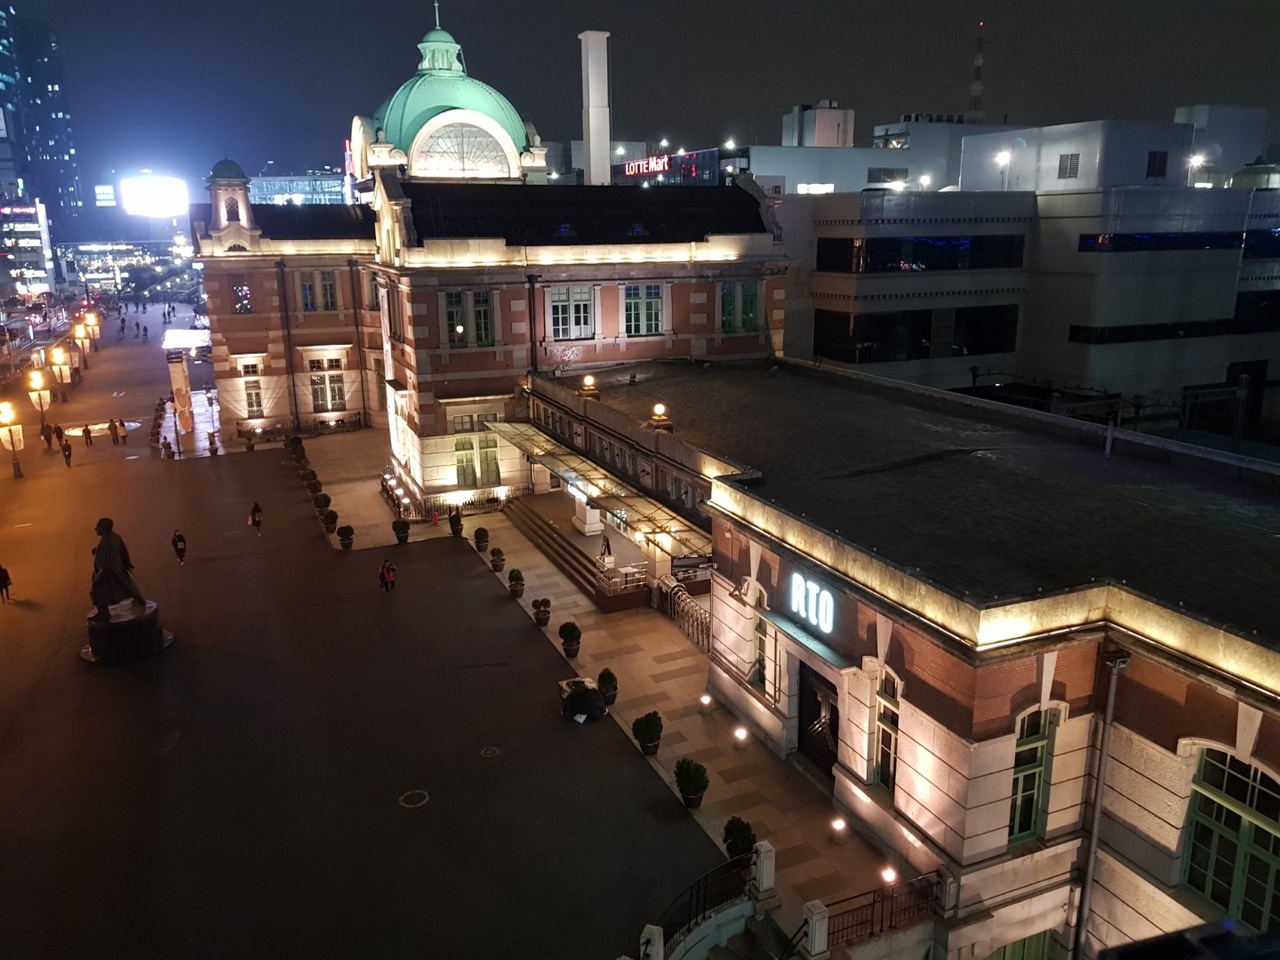 문화재 보존의 문제로 인해 본 역사 대신 북측 부분을 개조하여 새로 여객취급을 하는 서울역 옛 역 건물.